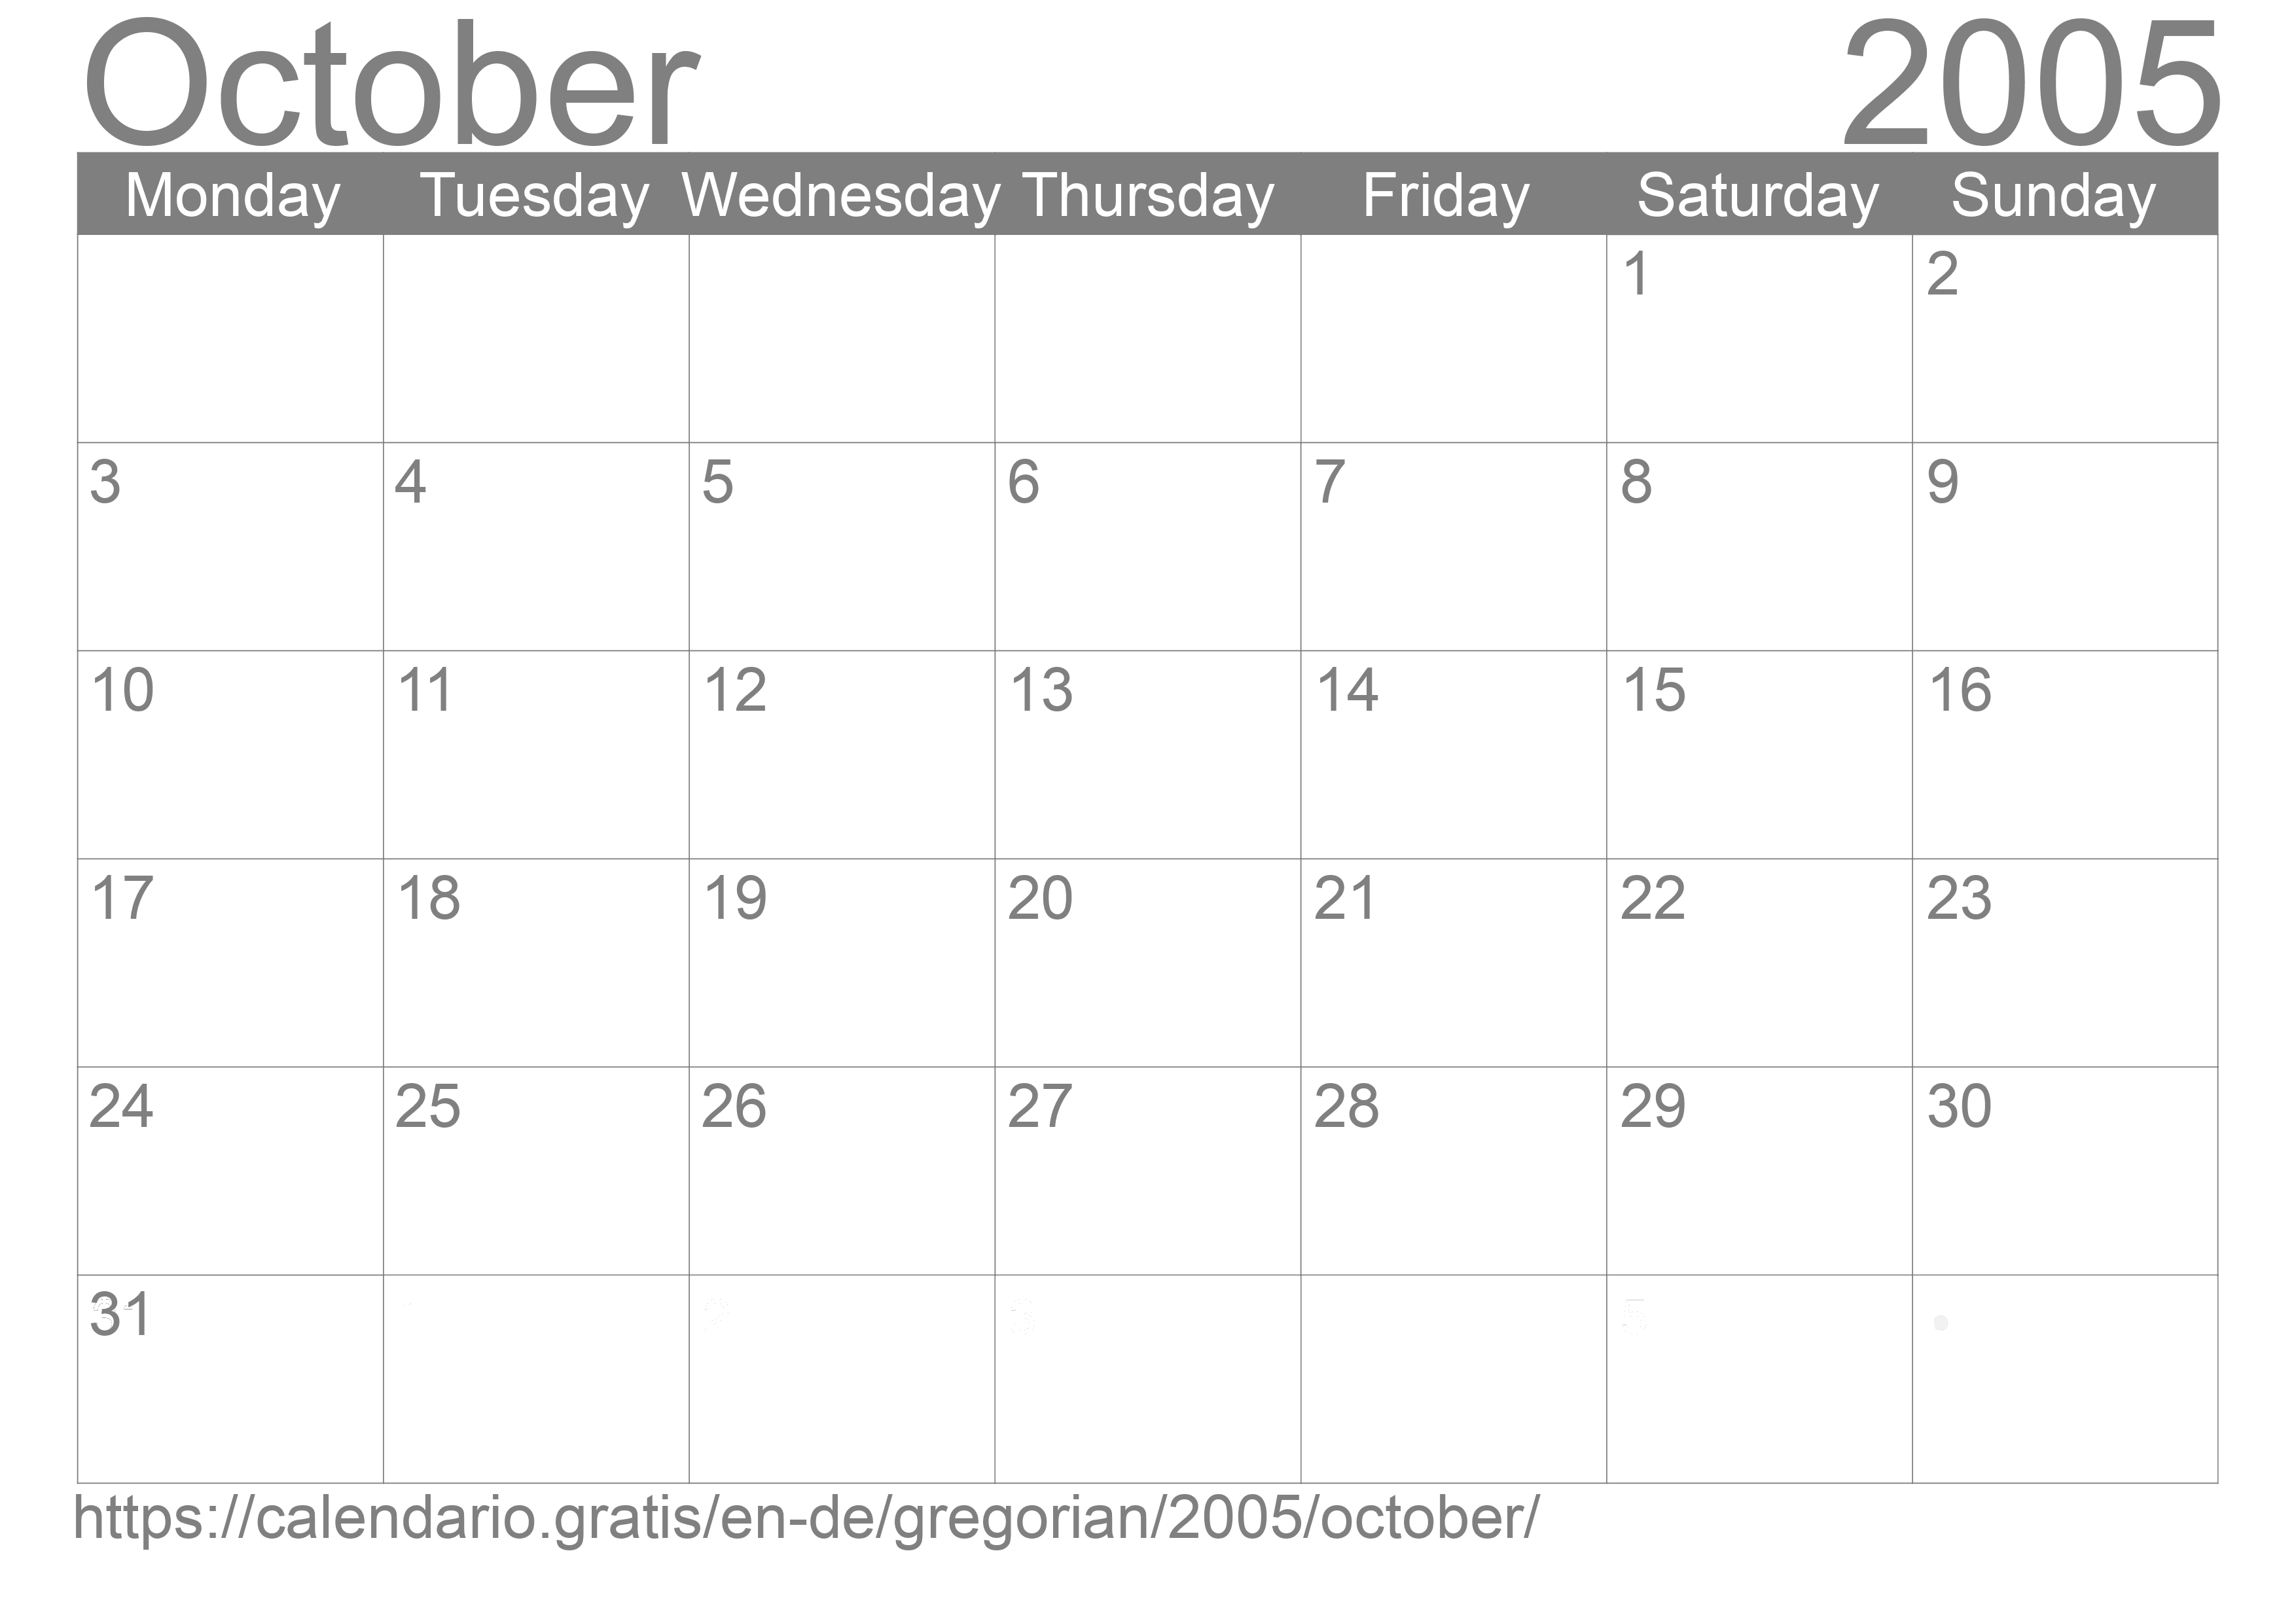 Calendar October 2005 to print